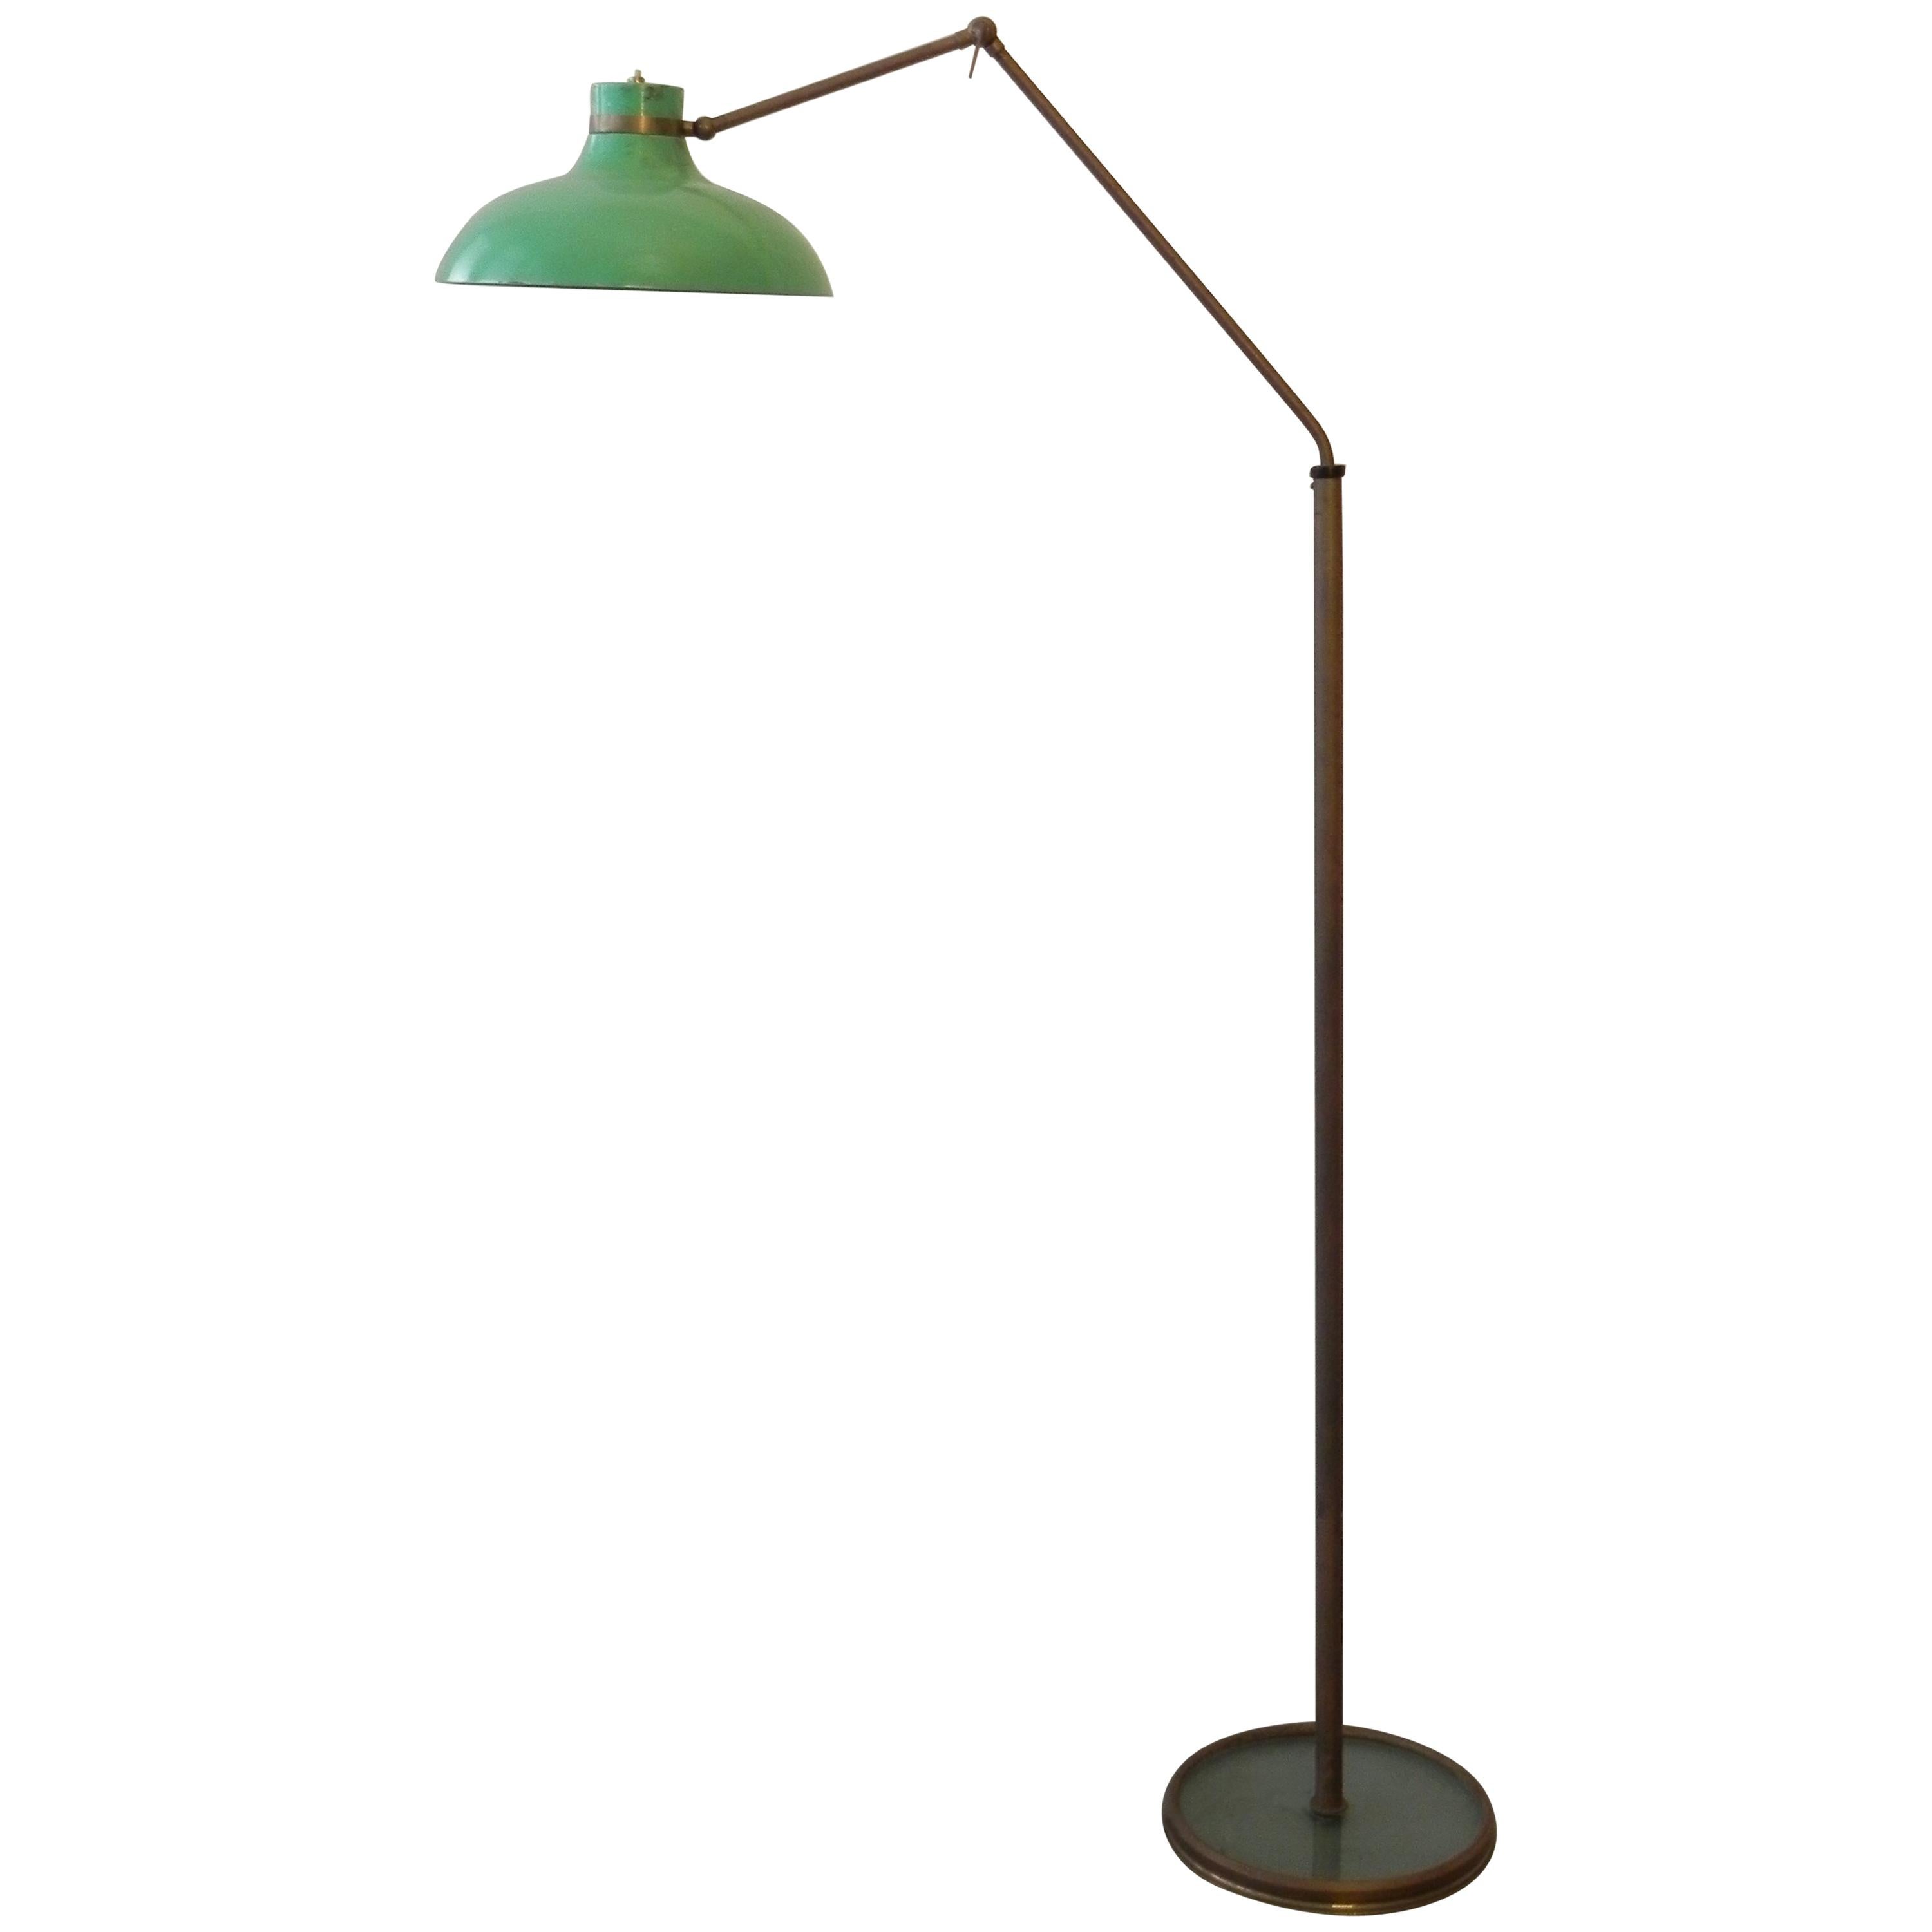 Floor Lamp "Parco dei principi " 1962 by Gio Ponti and Fontana Arte